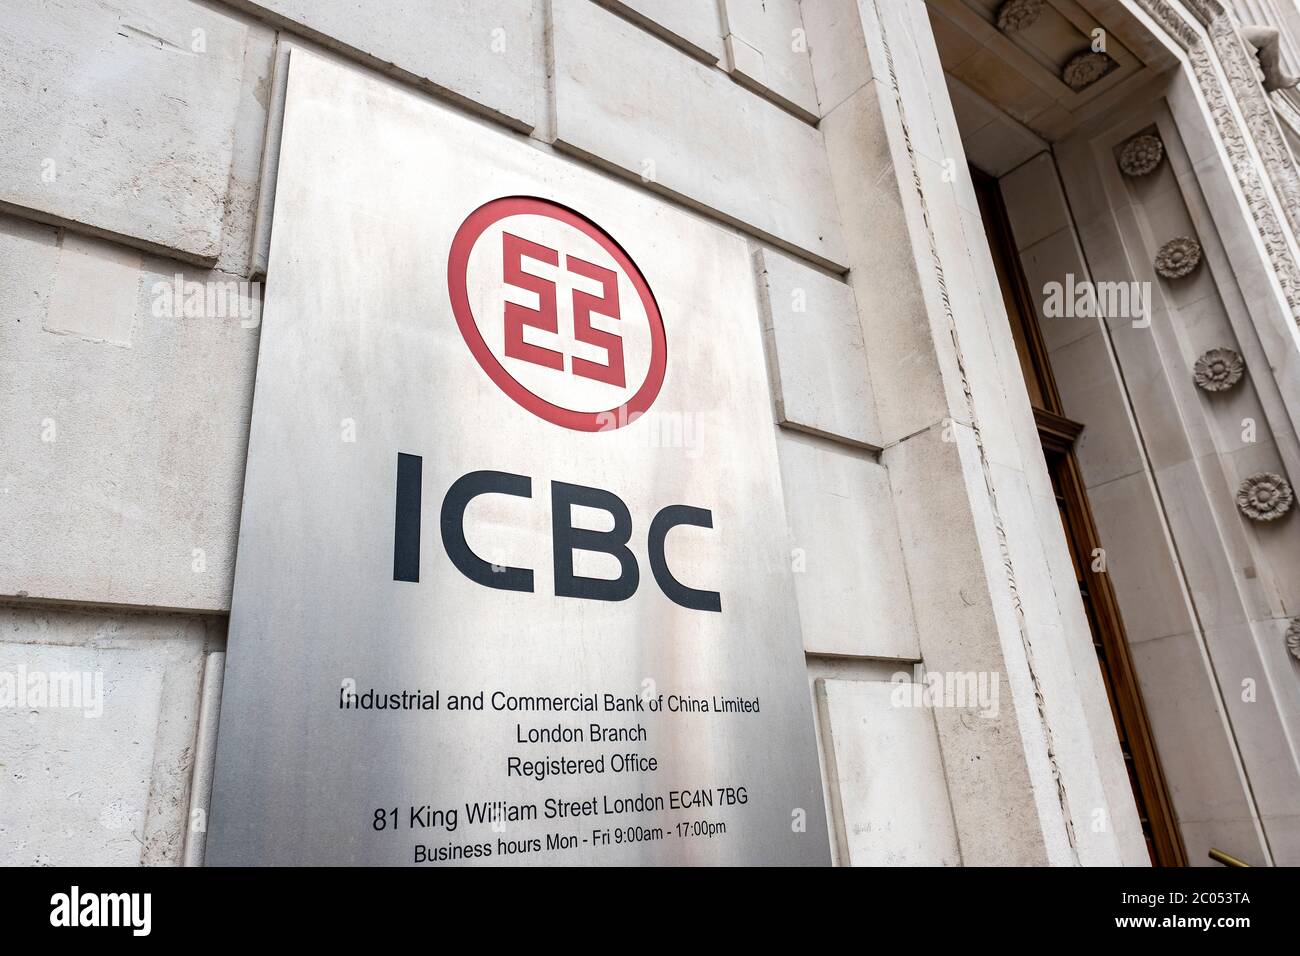 LONDRES- JUNIO de 2020: Banco Industrial y Comercial de China, o ICBC. Exterior y señalización, un banco comercial internacional y de inversión situado en Foto de stock